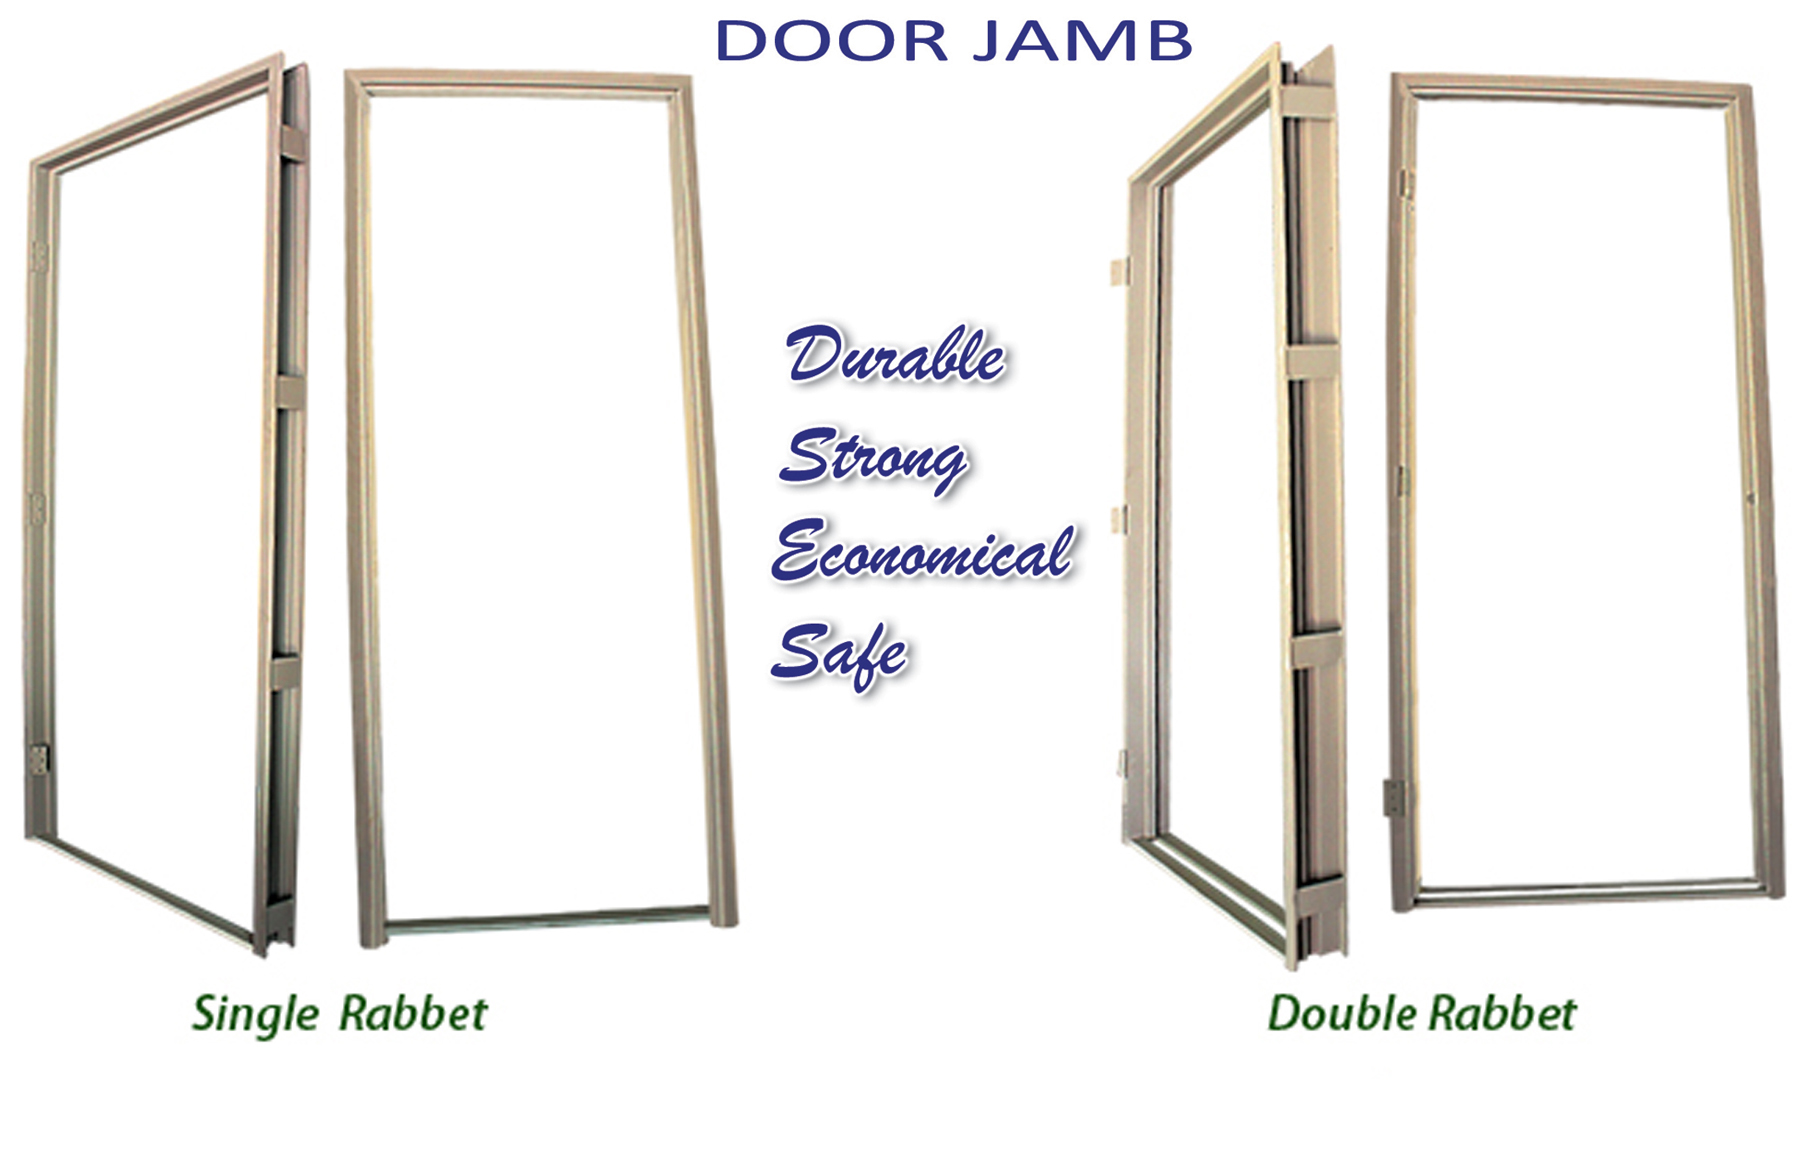 Open Sesame: All about Door Jambs